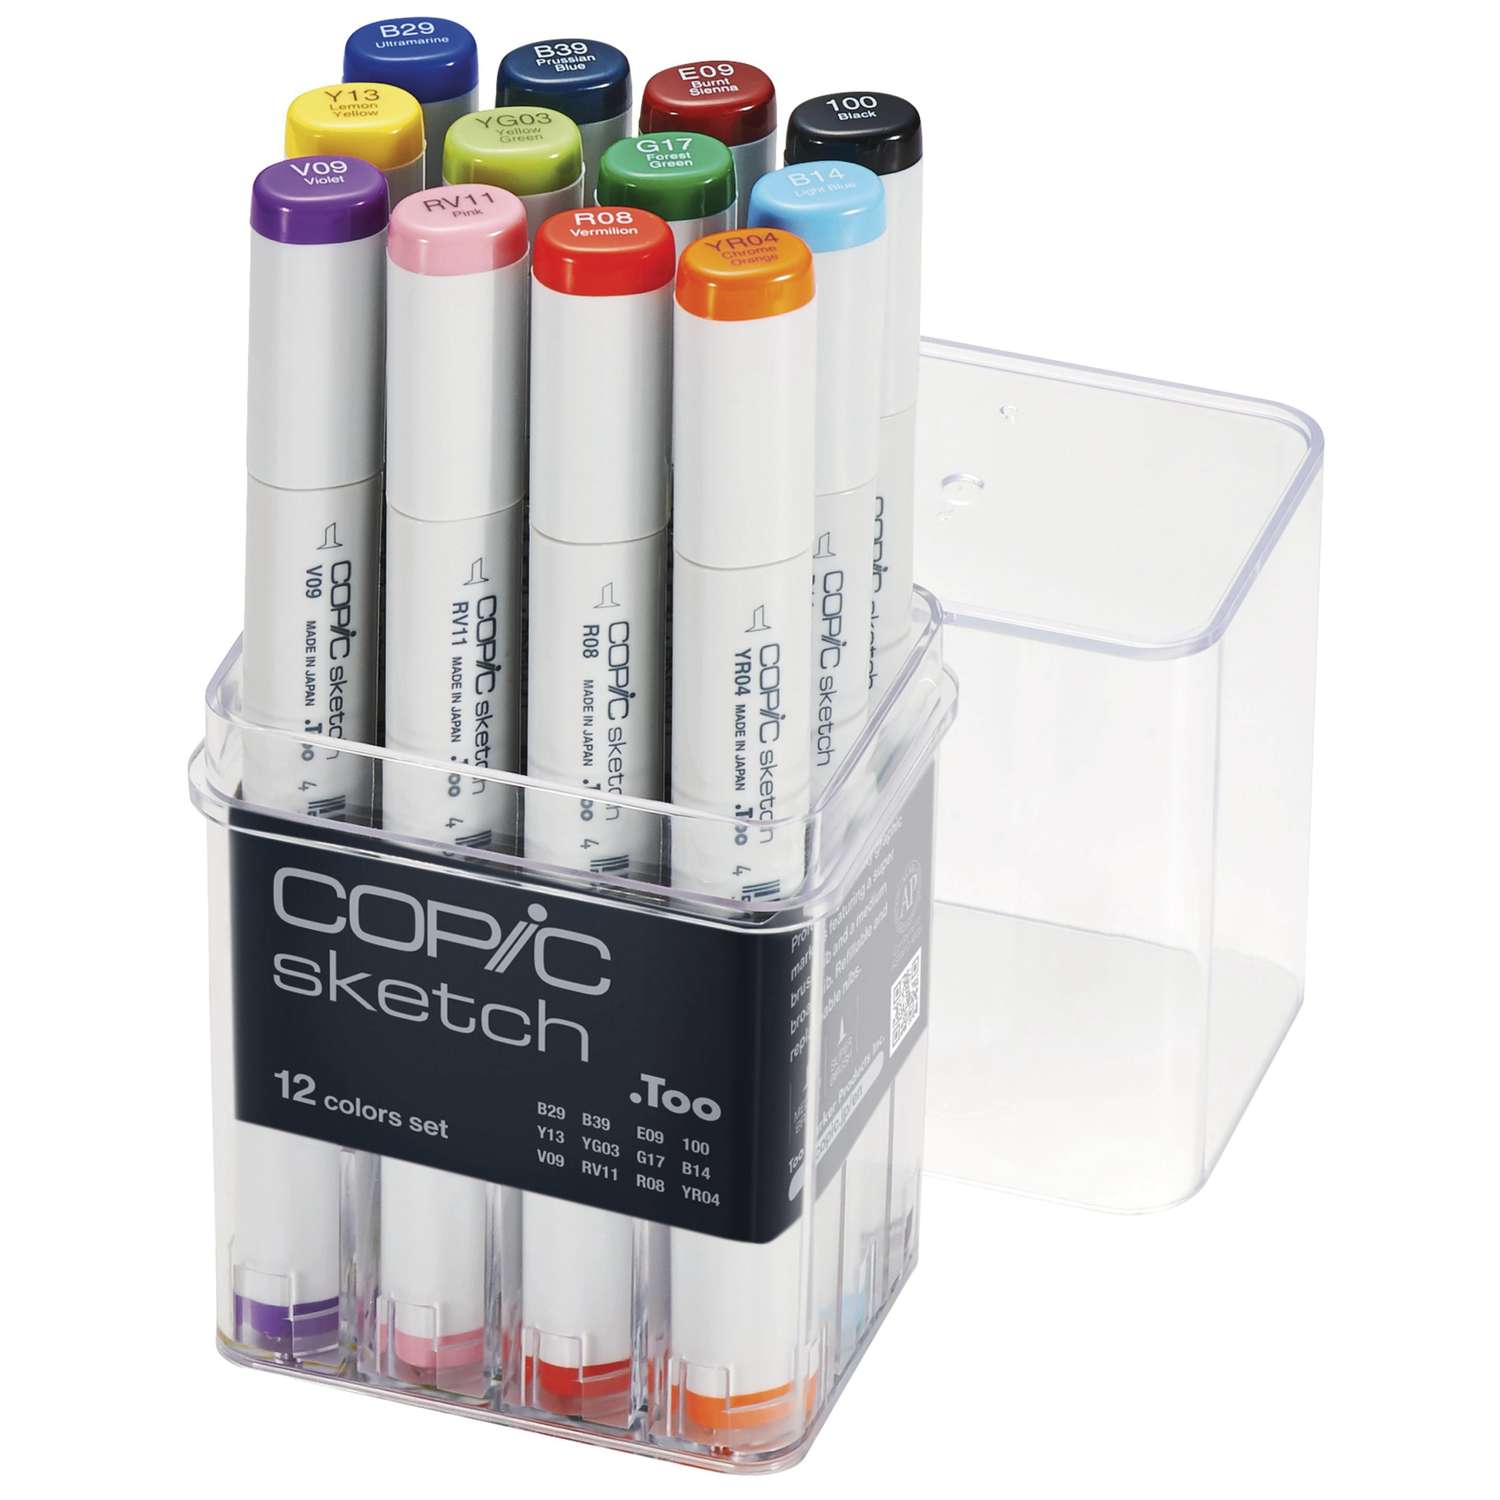 Copic Sketch Marker 72 Color Set B Artist Markers 4511338003756 | eBay